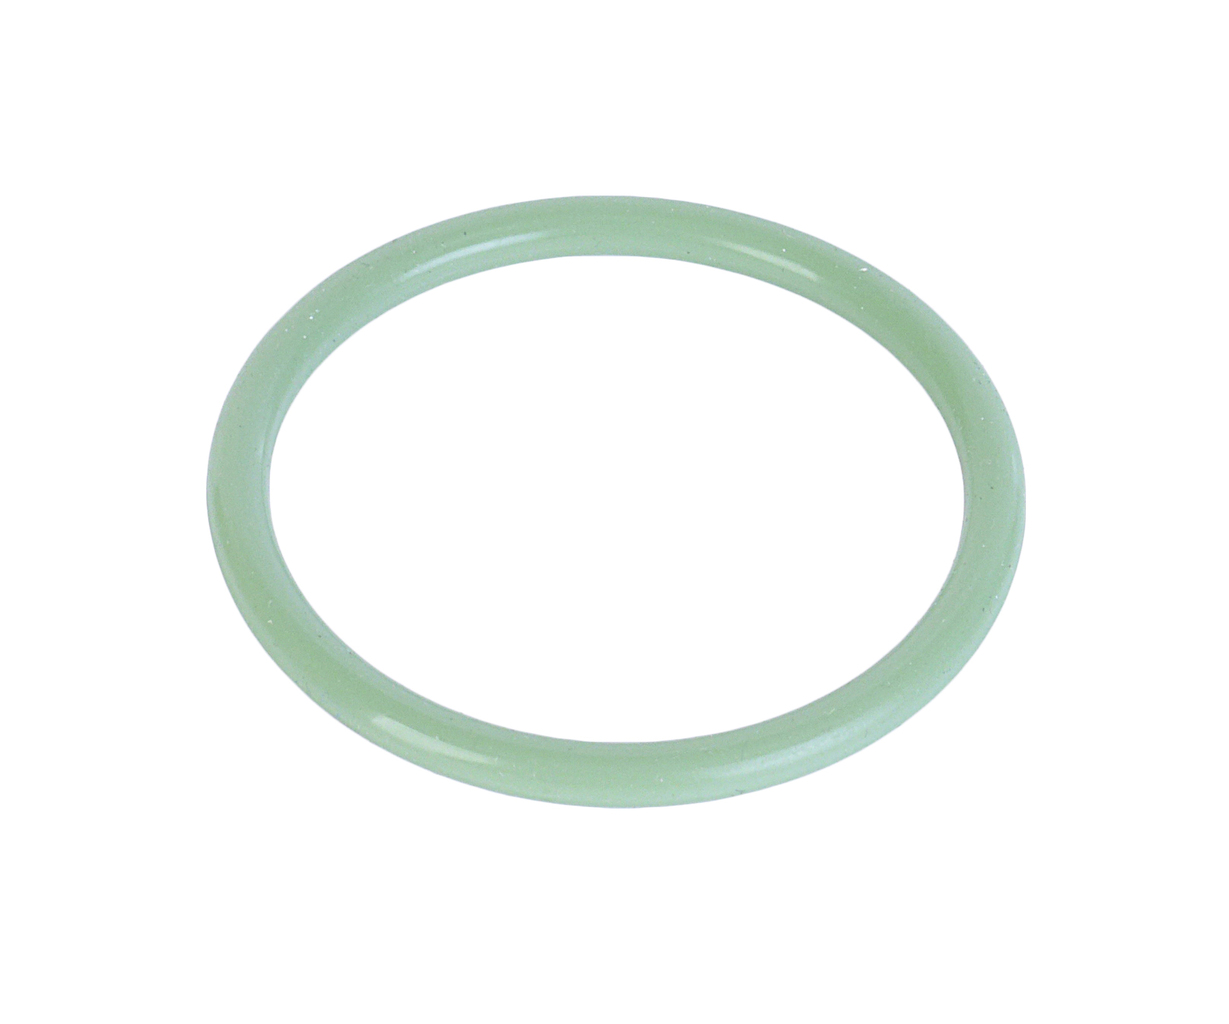 Кольцо ЯМЗ-650.10 уплотнительное трубы теплообменника зеленое силикон РД, 650.1013642, РУССКИЙ ДВИГАТЕЛЬ